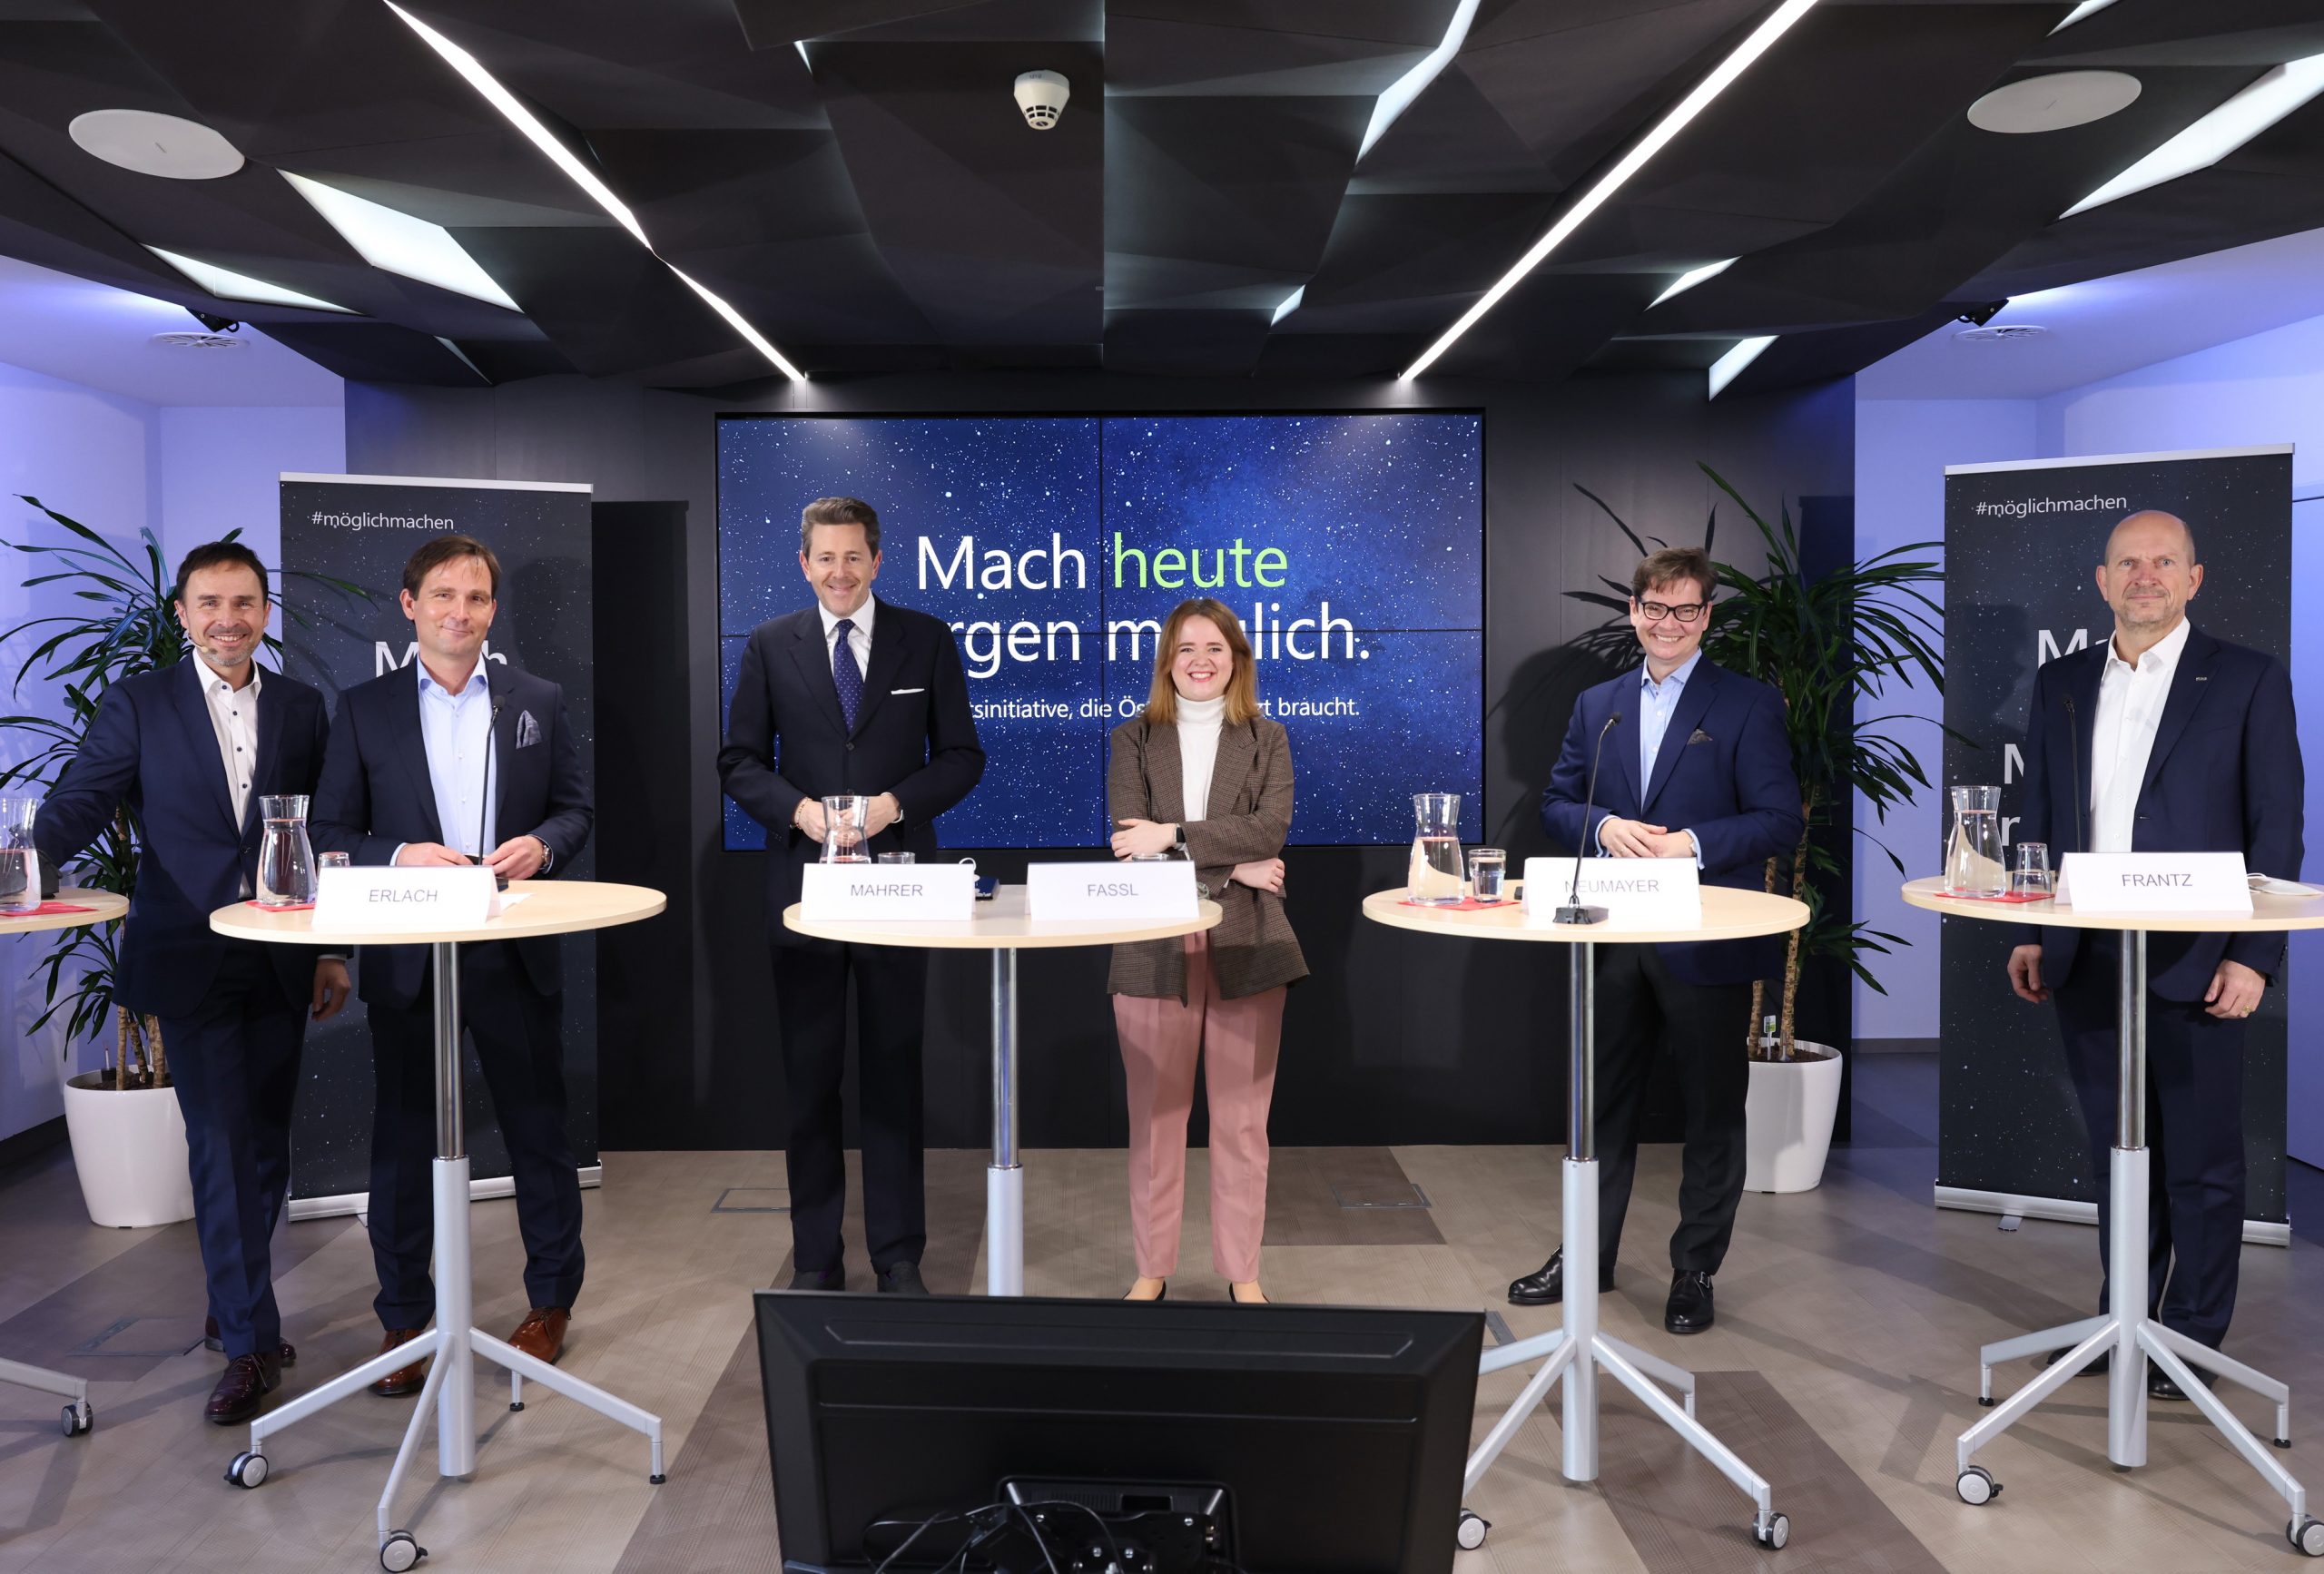 Mach heute Morgen möglich: Neuer Schulterschluss von über 100 Unternehmen und Organisationen will Österreich digitalisieren möglichmachen öbb oebb RHI Magnesita